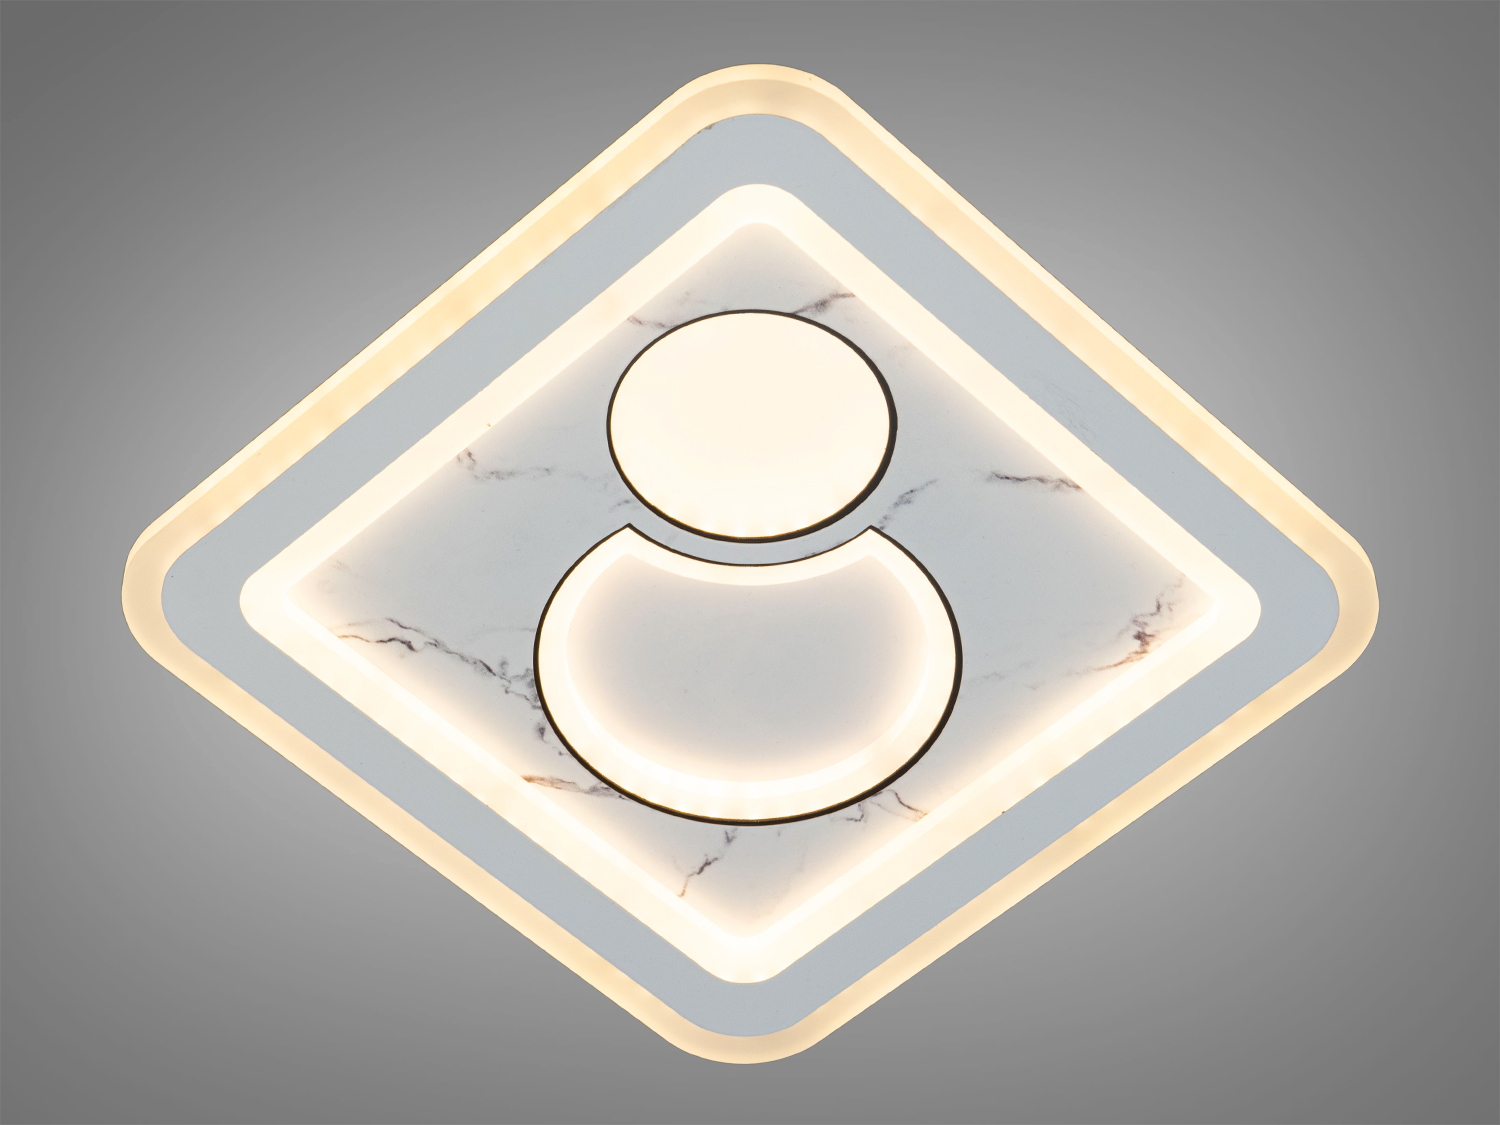 Цей світлодіодний світильник 52 Вт зачаровує своєю формою та функціональністю, яка дозволяє йому вливатися в будь-який інтер'єрний простір з легкістю. Його особливість полягає не тільки в полівалентності використання, але й в увазі до деталей, яка виявляється в кожному куточку цього шедевру освітлювальної техніки.
Унікальність цього світильника в його універсальності, робить його ідеальним для використання в різних функціональних зонах: як настінний світильник він може додати акцент до коридору або вітальні, як накладний точковий світильник – стане виразним елементом у ванній кімнаті або над стільницею, а як стельова люстра – центральною декоративною точкою в будь-якому приміщенні.
Розсіювач, виконаний з литого акрилу, служить не тільки для рівномірного розподілу світла, але й як естетичний акцент, що відзеркалює сучасні тенденції дизайну. Контраст між матовою поверхнею і чистими, різкими лініями створює візуальний інтерес, що приваблює погляд і робить світильник візитною карткою будь-якої кімнати.
Як світлодіодний світильник на кухню, він виблискує практичністю, забезпечуючи яскраве і фокусоване світло, яке надзвичайно важливе для кулінарних процесів та сімейних зборів. Його присутність в кухонному просторі додає сучасного шарму, підкреслюючи чистоту ліній та простоту сучасного життя.
У спальні цей світлодіодний світильник трансформується в джерело спокою, створюючи атмосферу затишку та релаксації. М'яке світло, що розсіюється через акриловий розсіювач, обволікає простір, ніби туман на світанку, даруючи відчуття захищеності та тепла.
Для тих, хто прагне до доступного, але вишуканого рішення для своєї оселі, пропозиція купити світлодіодний світильник дешево у магазині 